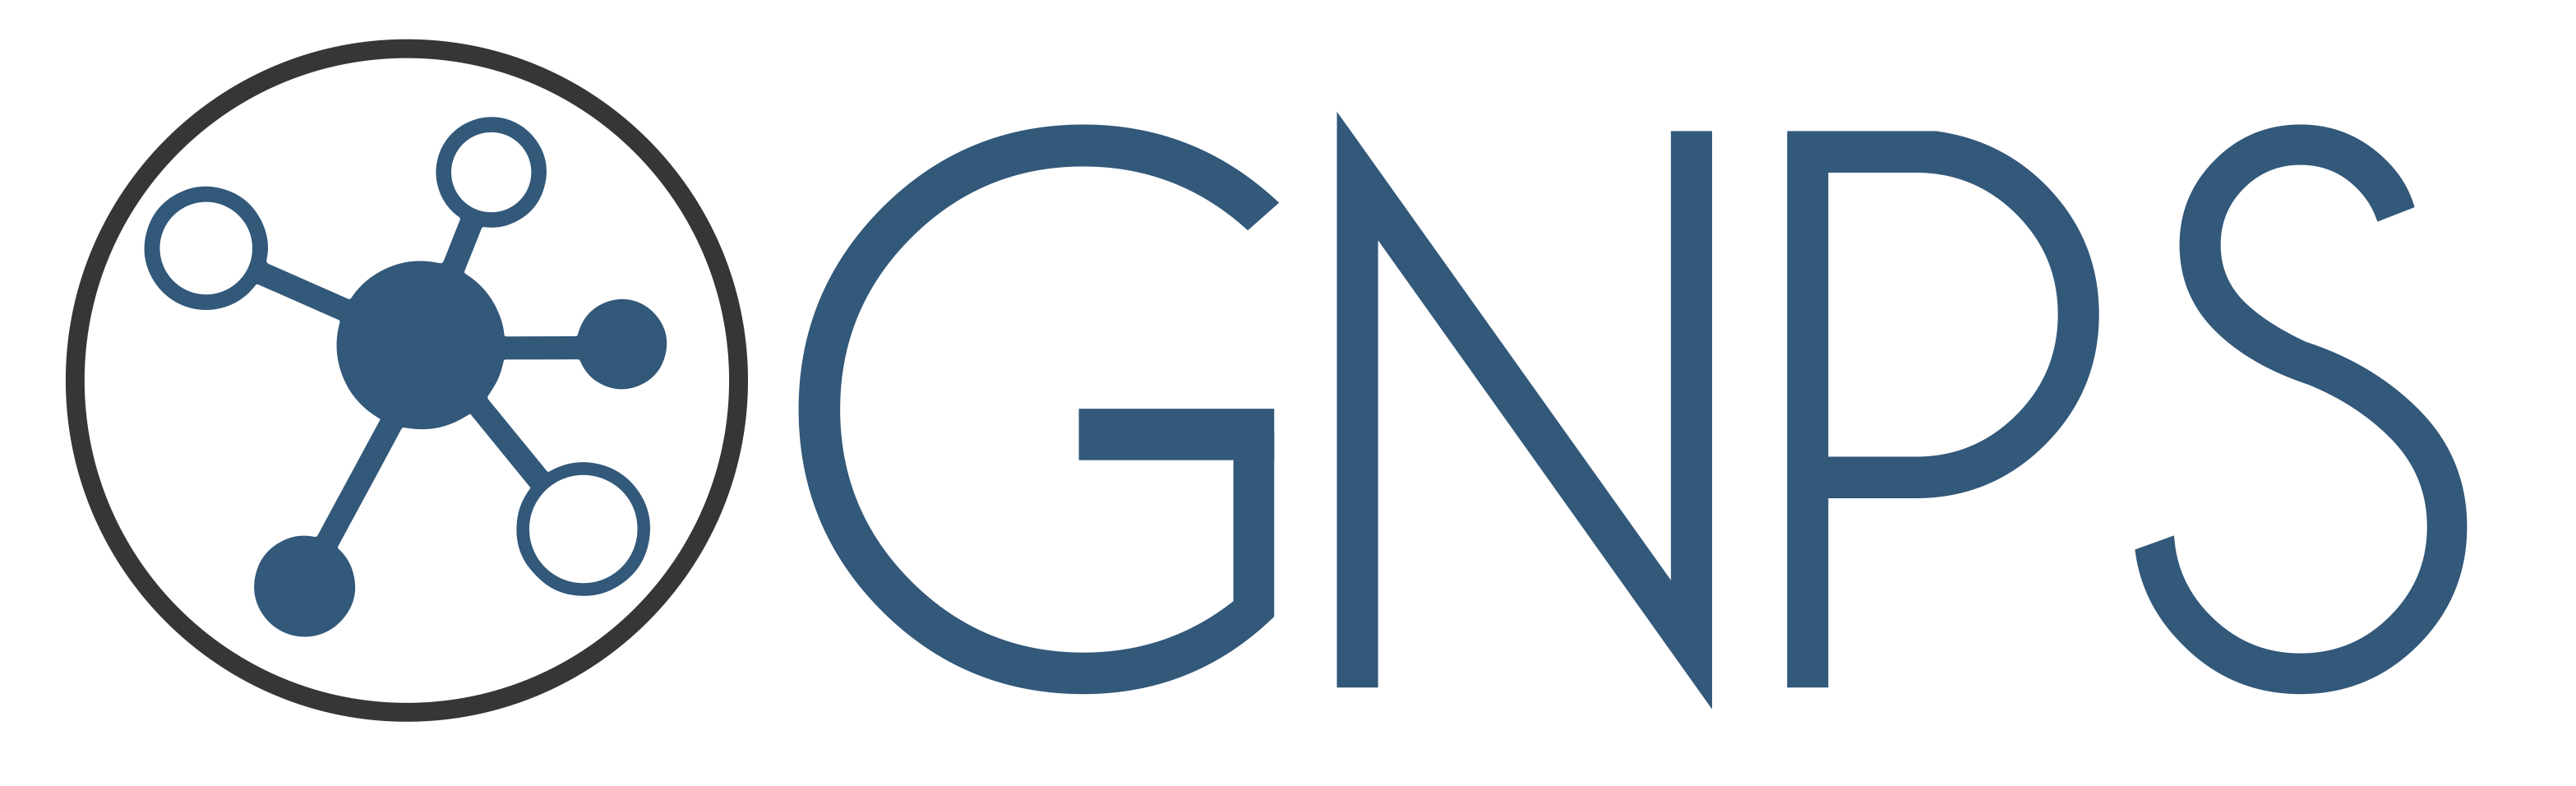 gnps logo